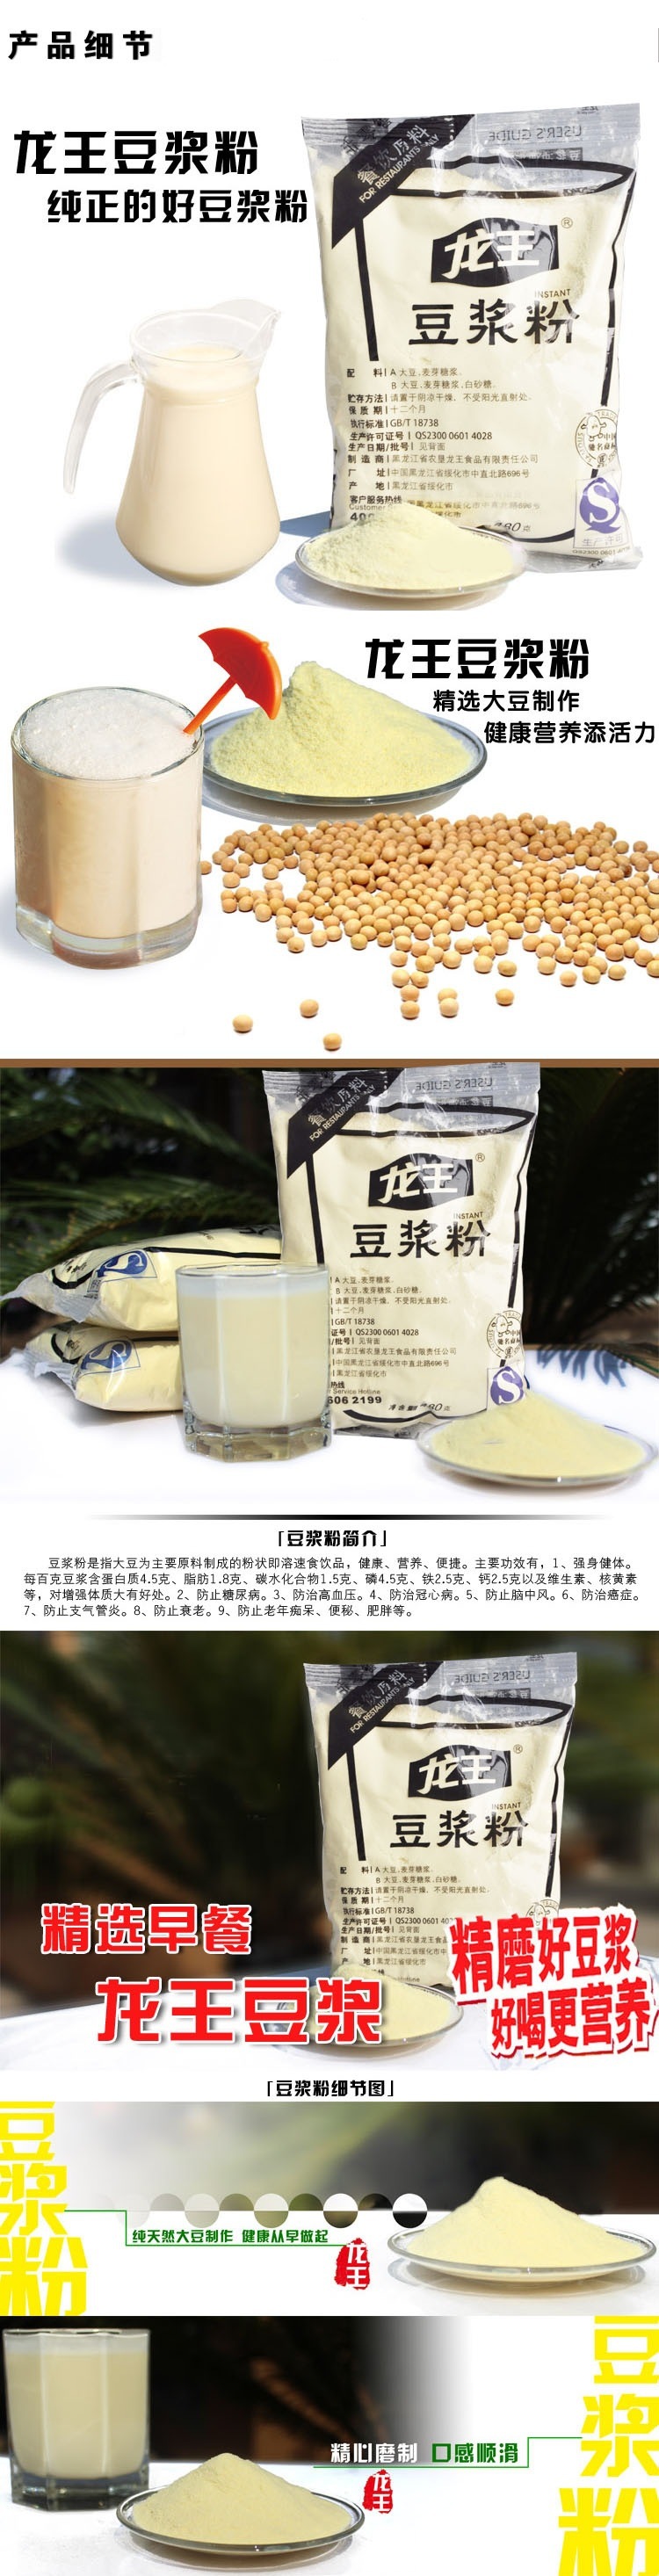 龙王豆浆粉 肯德基专用豆浆粉 480g 原味,甜味 冲调饮品